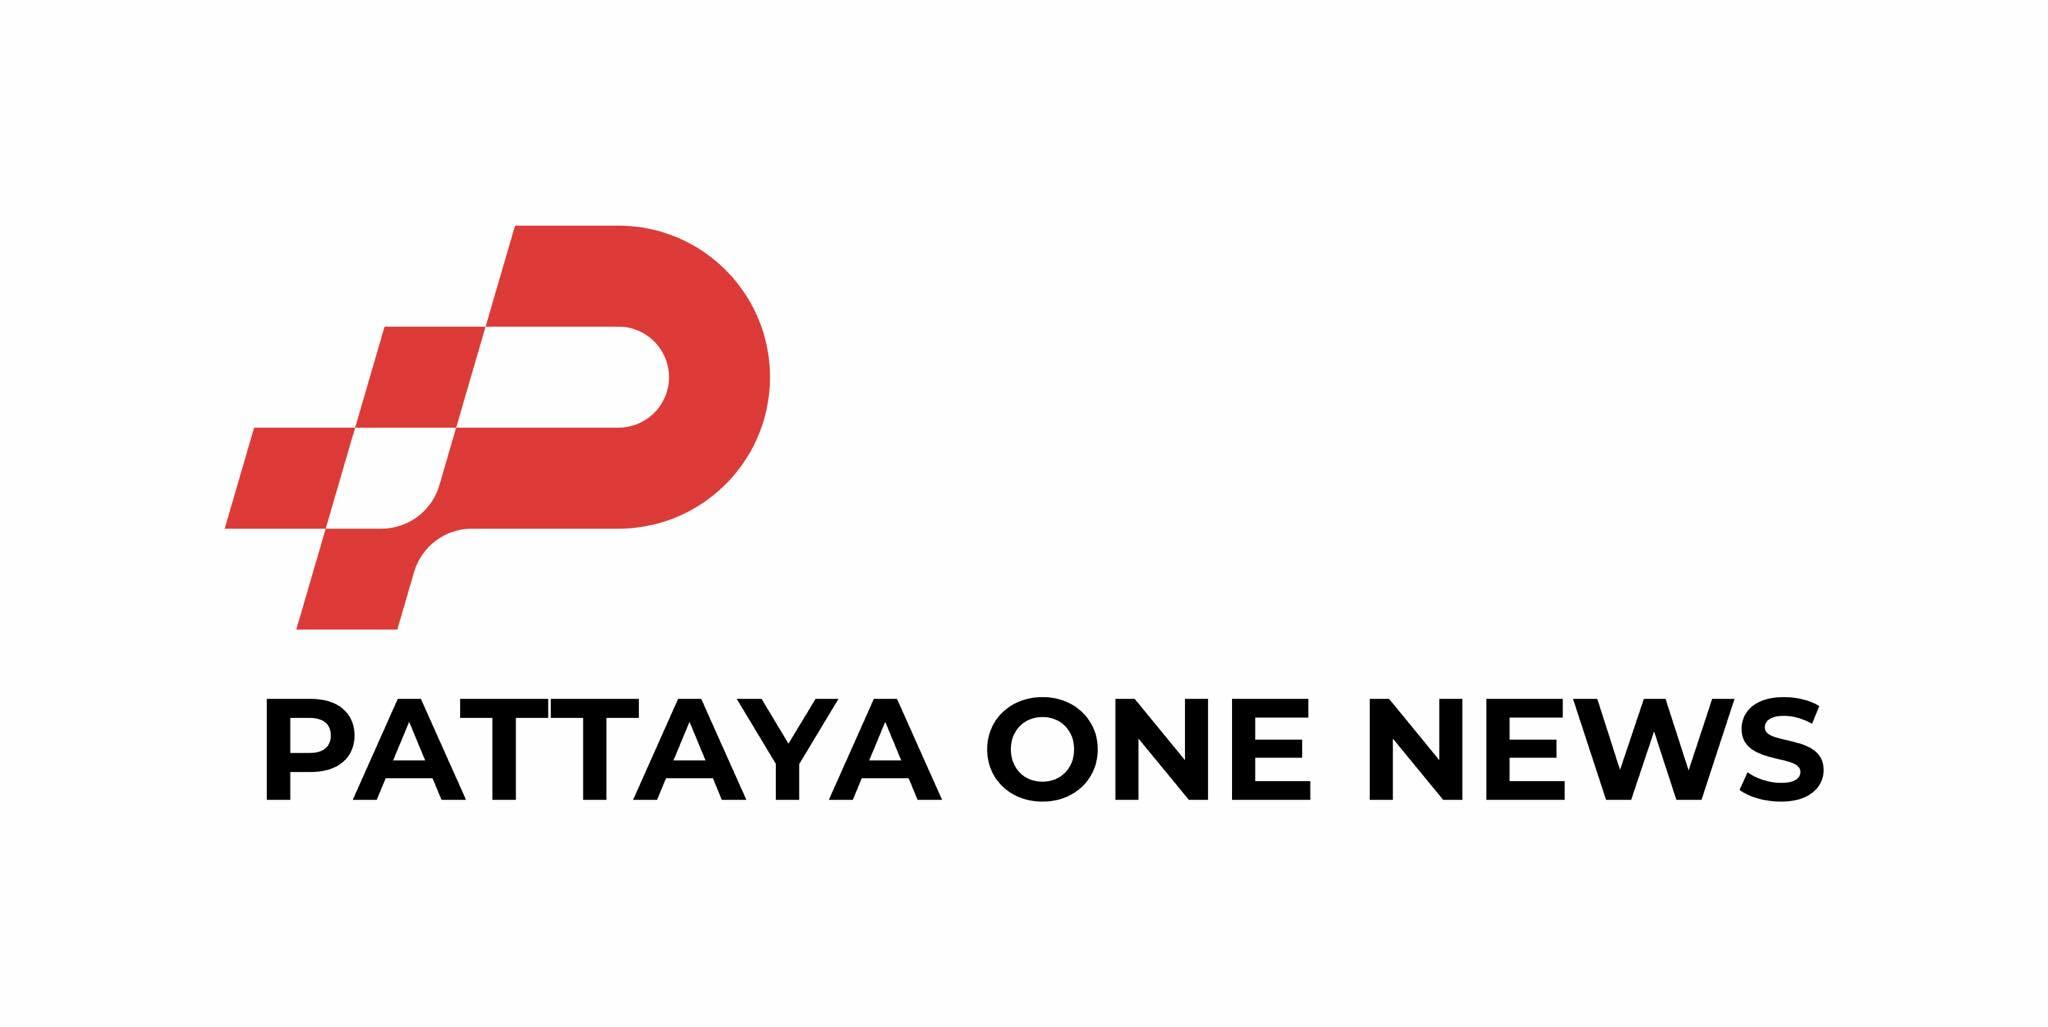 pattayaone.news